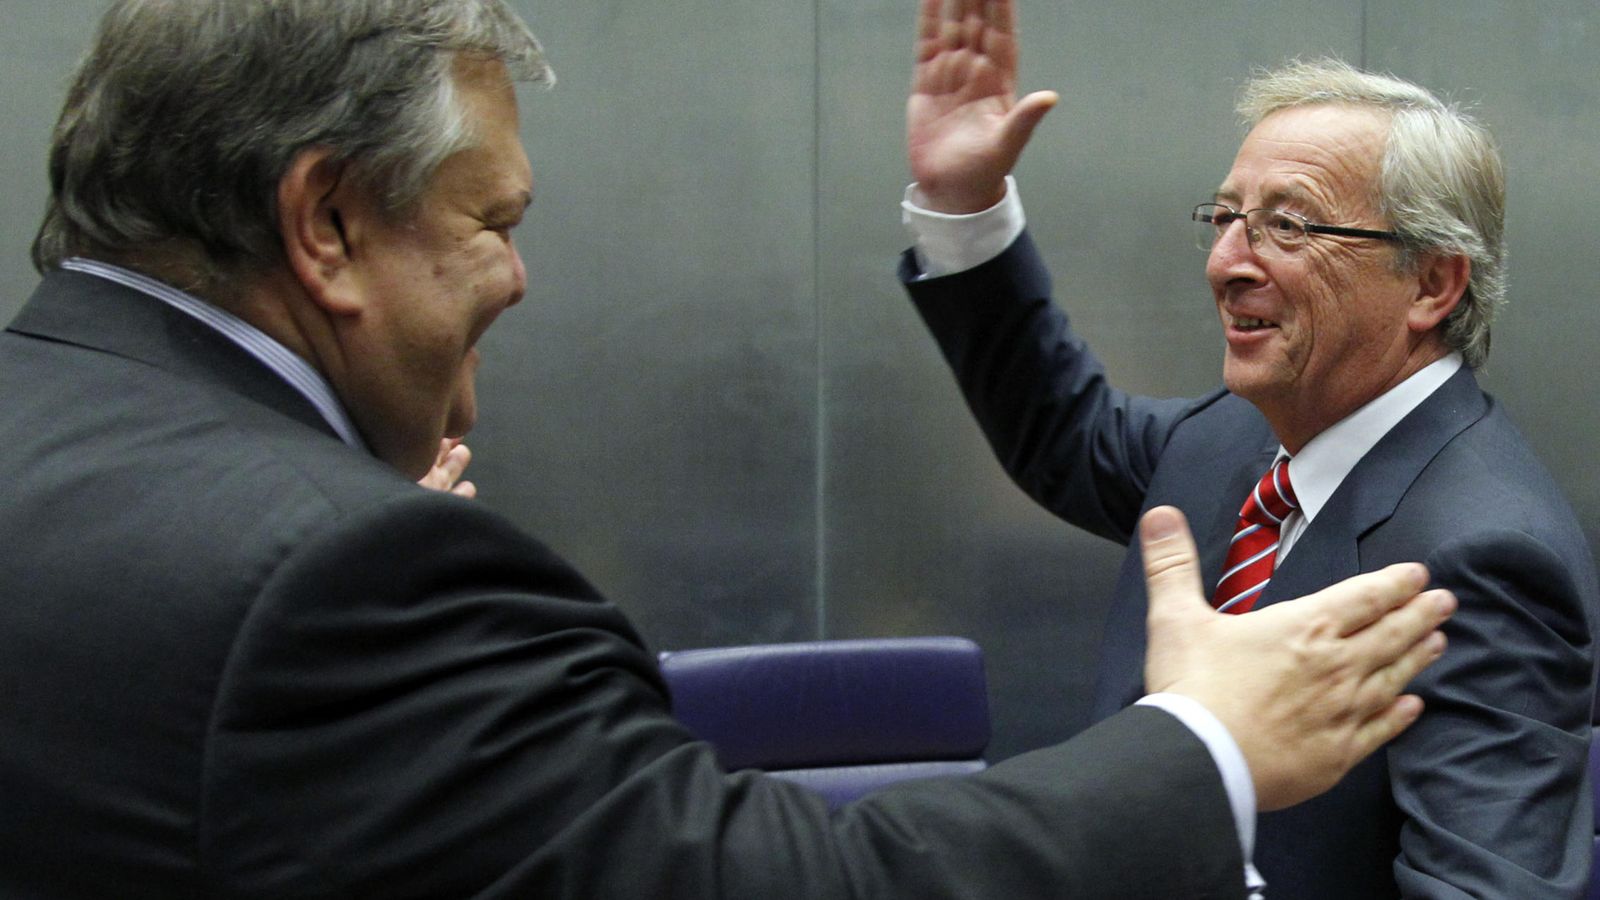 Foto: Jean-Claude Juncker saluda al antiguo ministro de finanzas de Grecia Evangelos Venizelos durante una reunión en Luxemburgo. (REUTERS/Francois Lenoir)